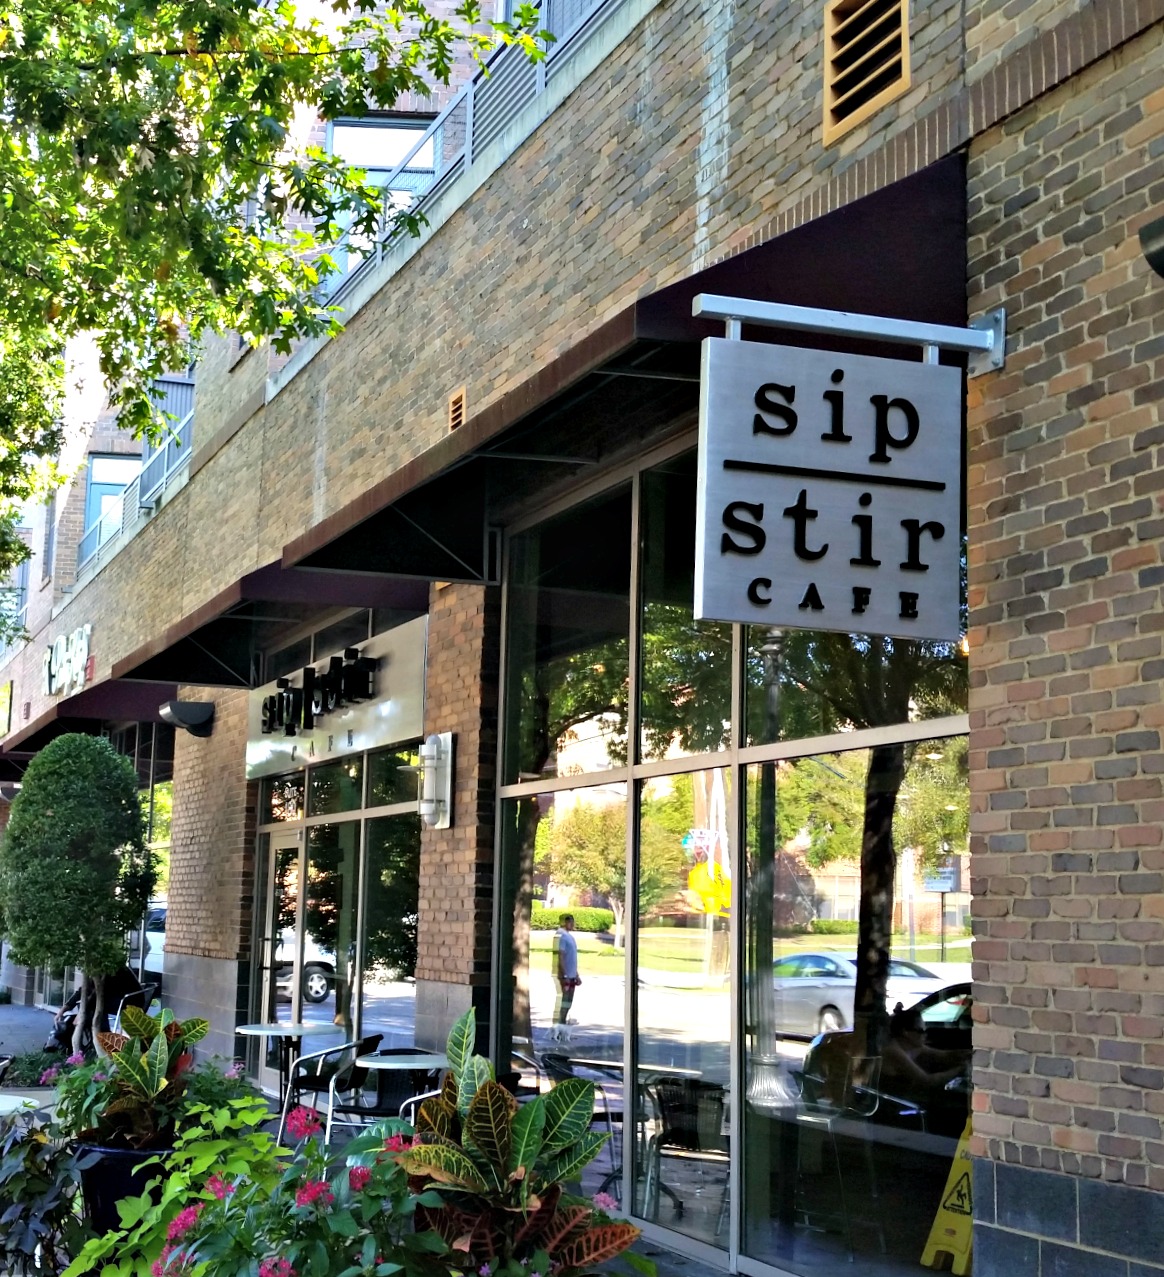 Sip Stir Cafe 1.0.jpg